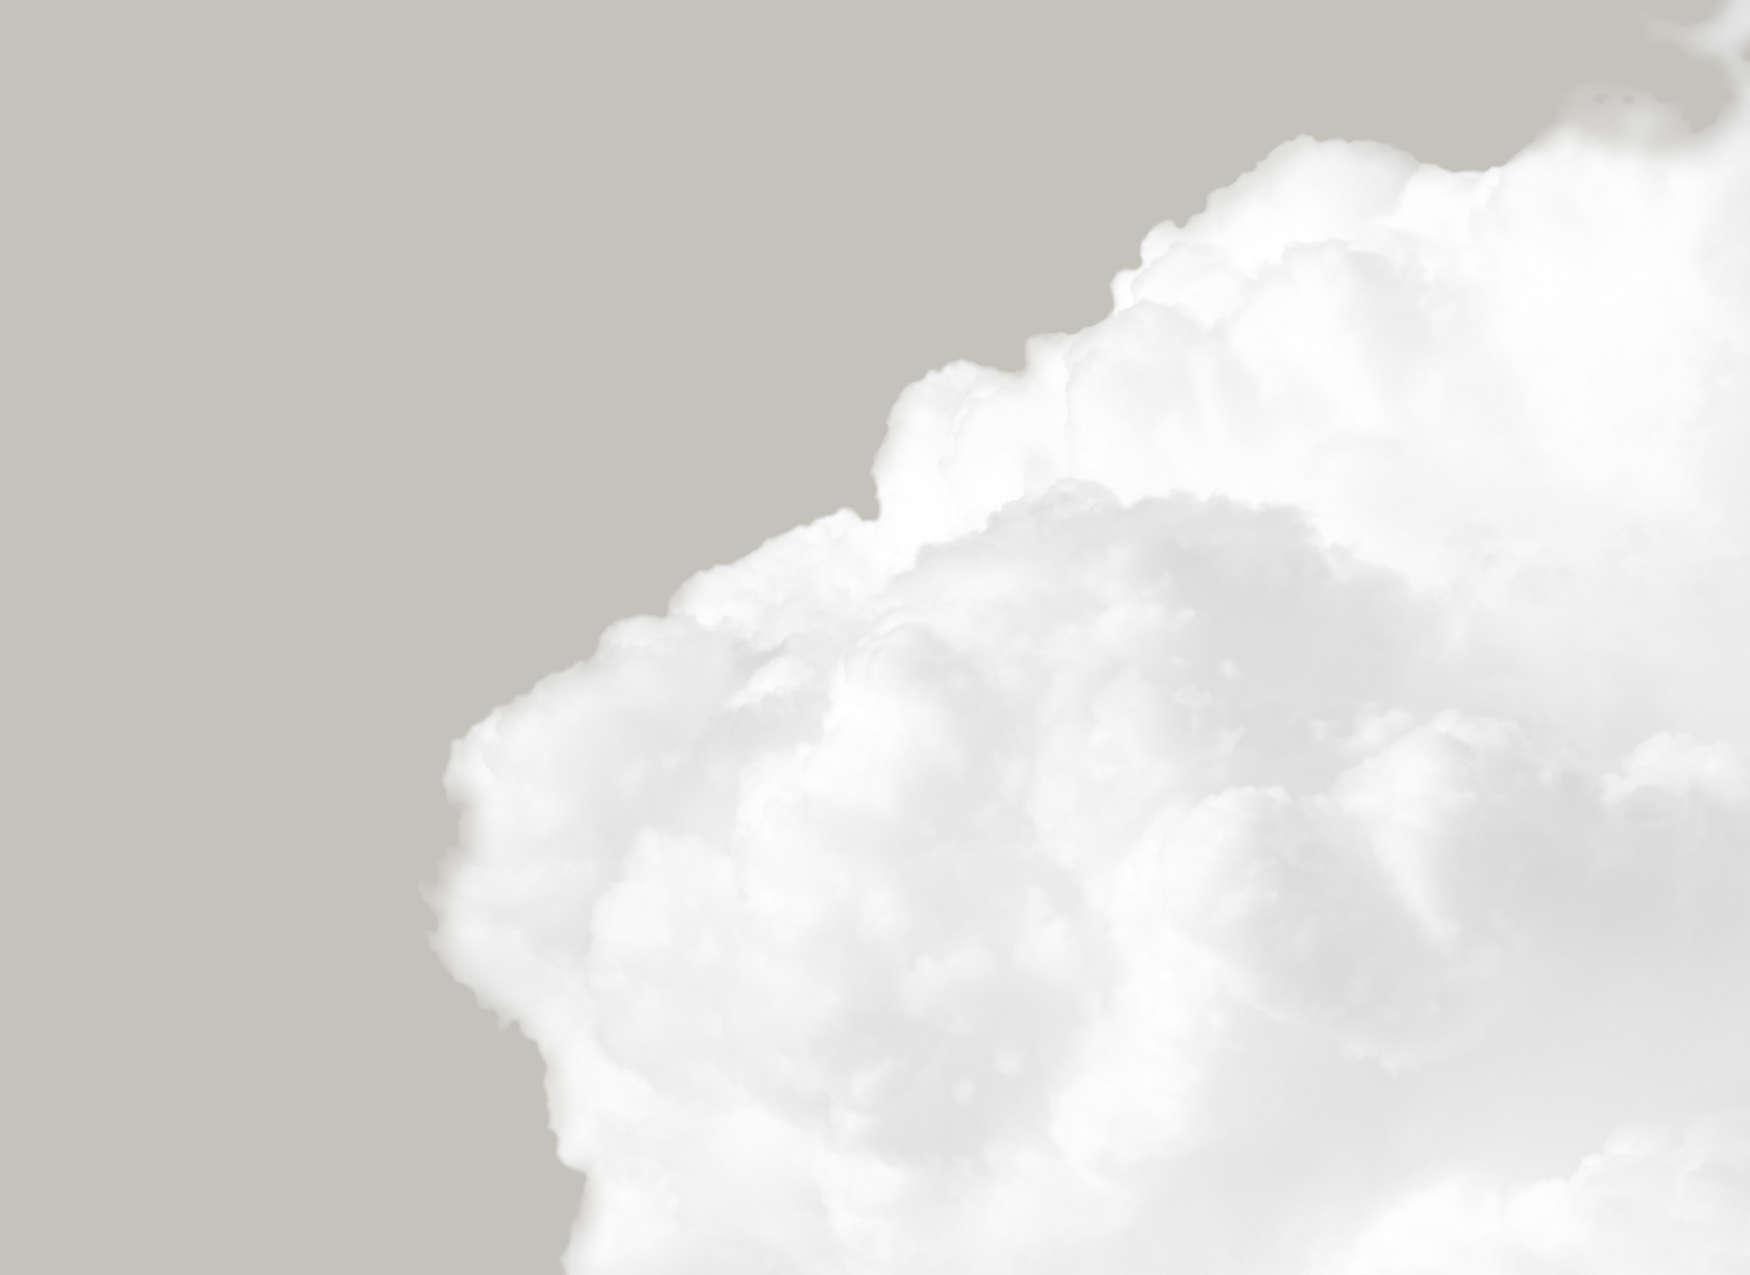             Digital behang met witte wolken in een grijze lucht - Grijs, Wit
        